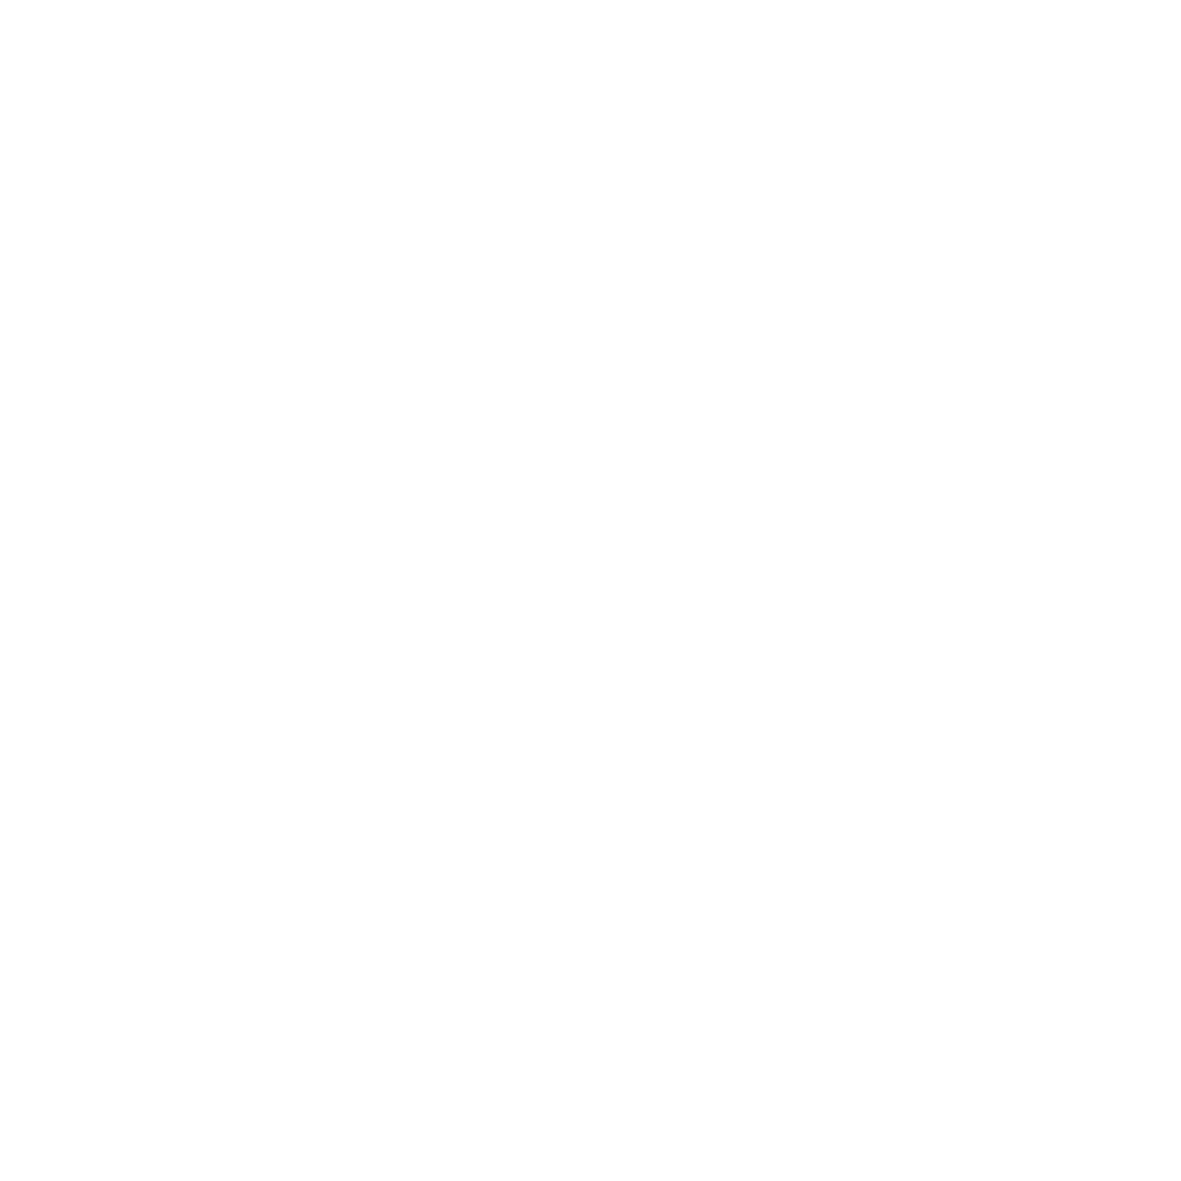 ICH.co